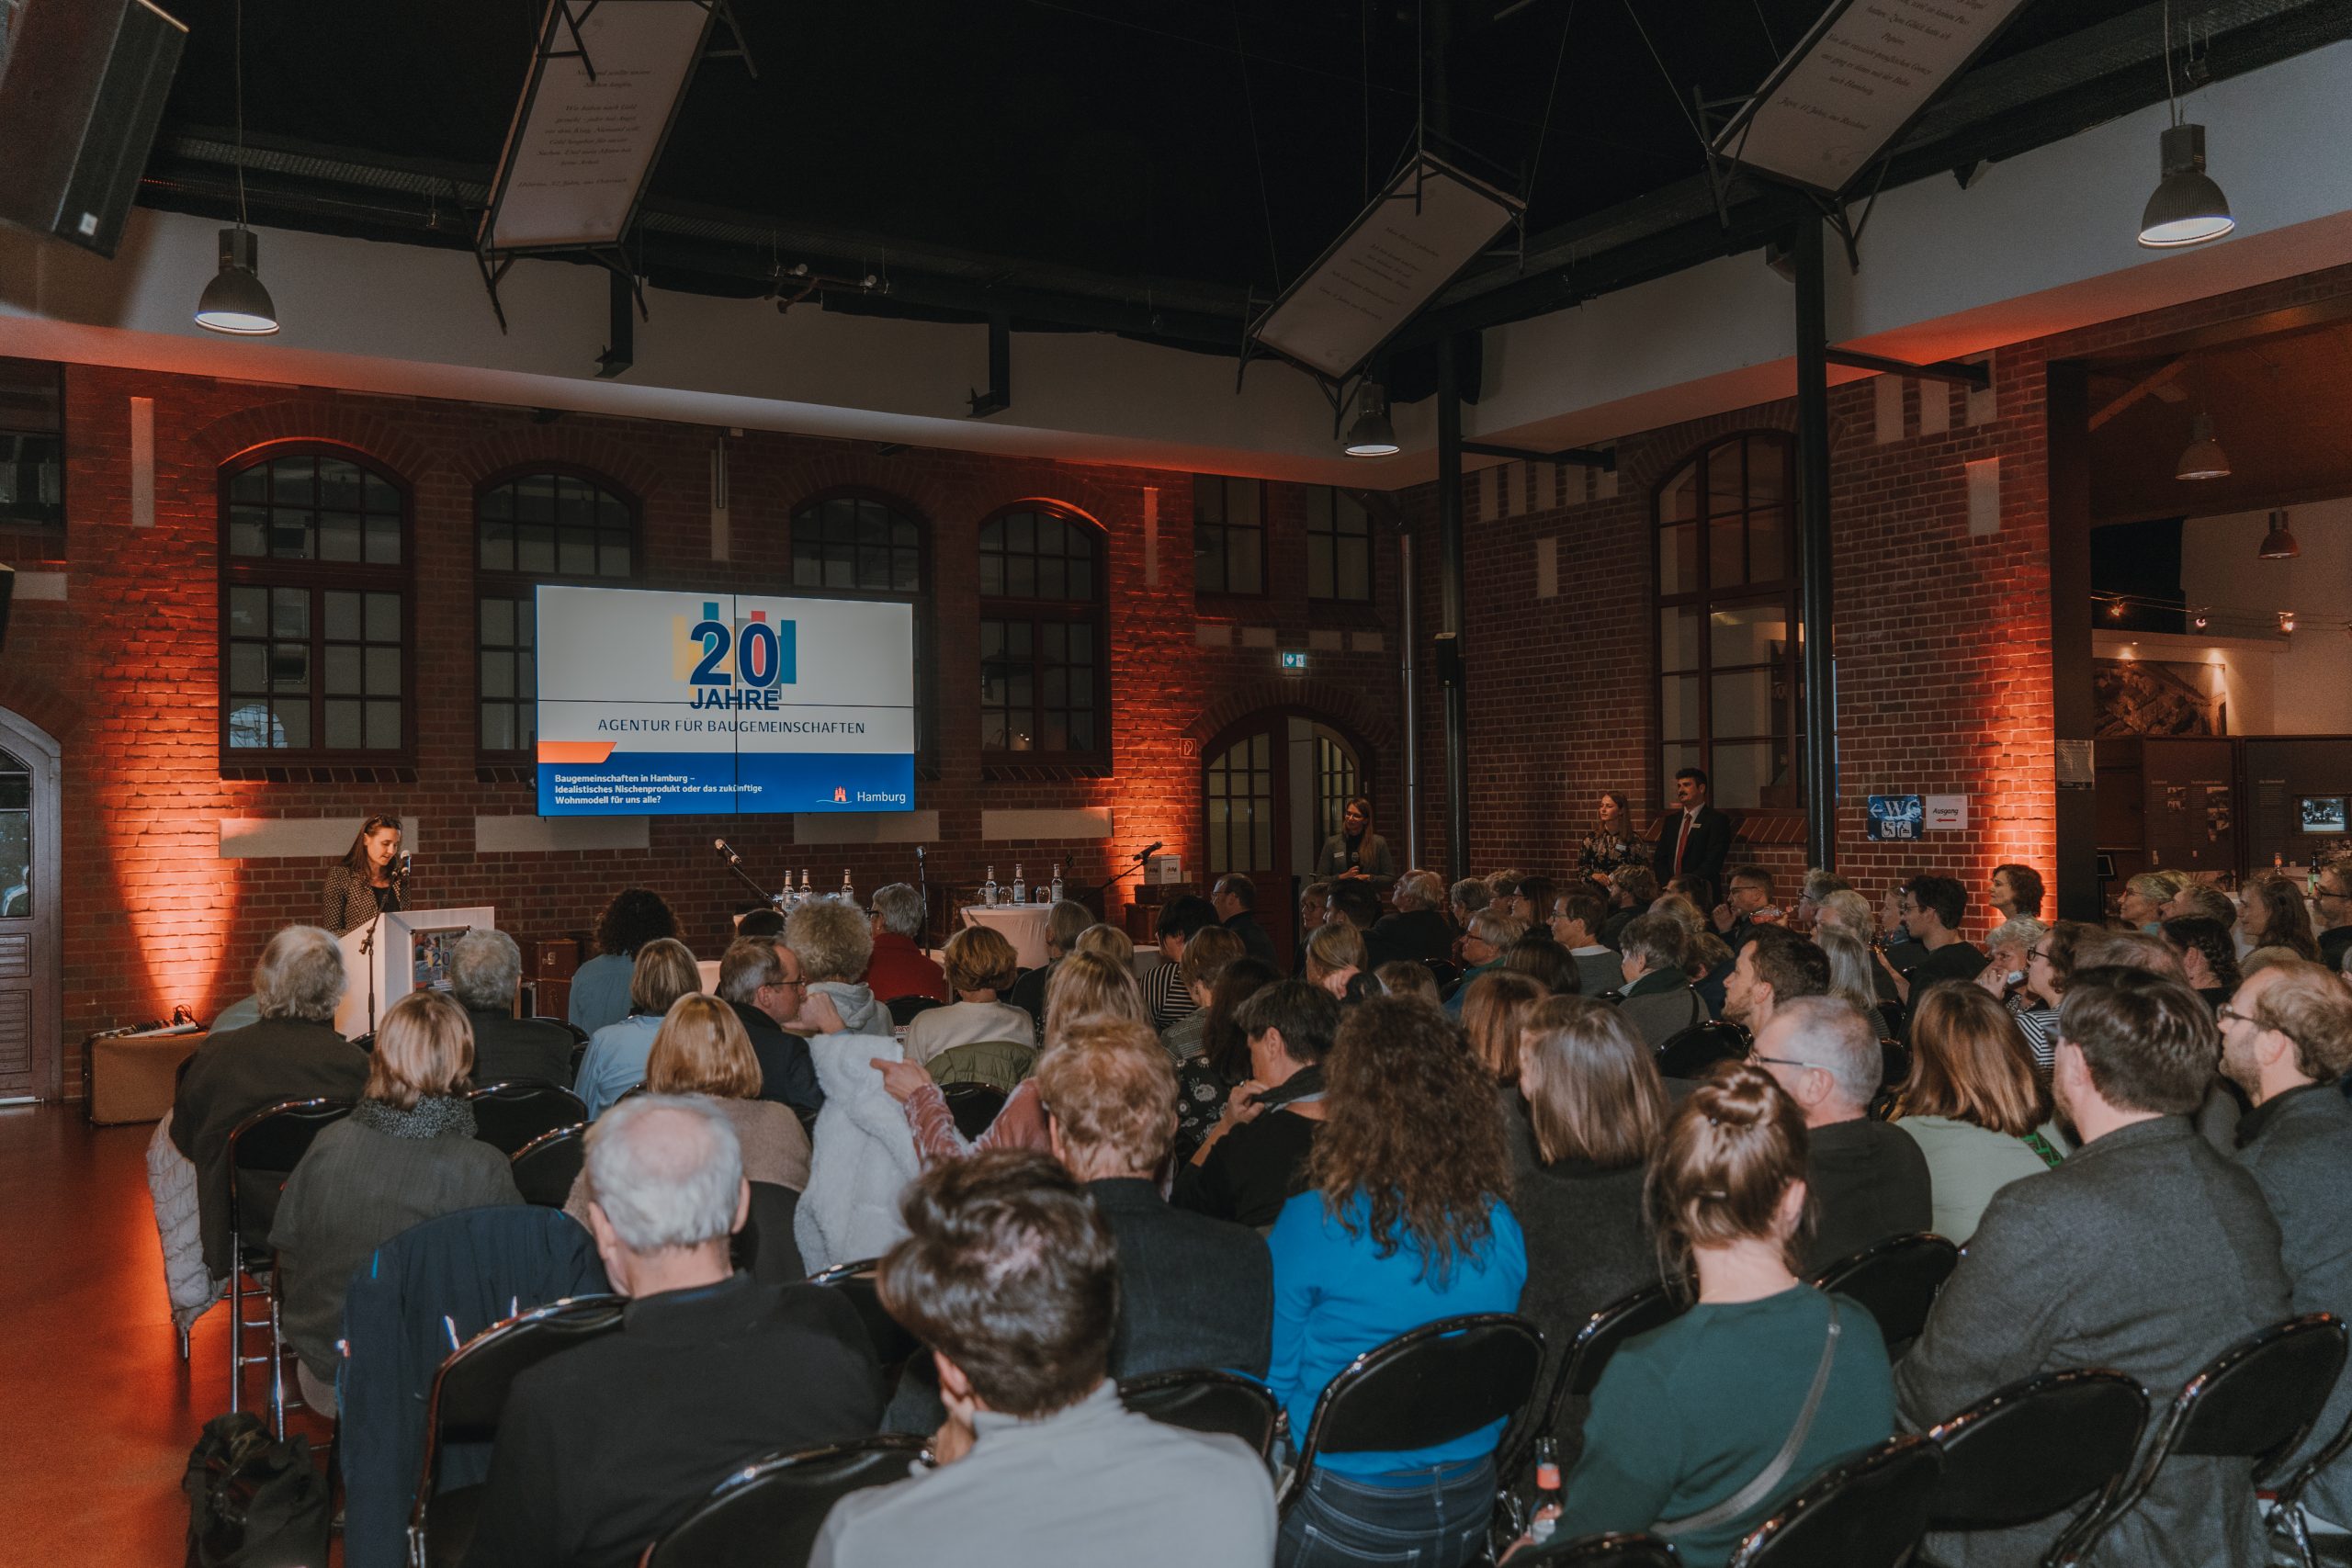 Saal mit Publikum und Rednerin vorne neben einem großen Bildschirm mit dem Titel "20 Jahre Agentur für Baugemeinschaften"